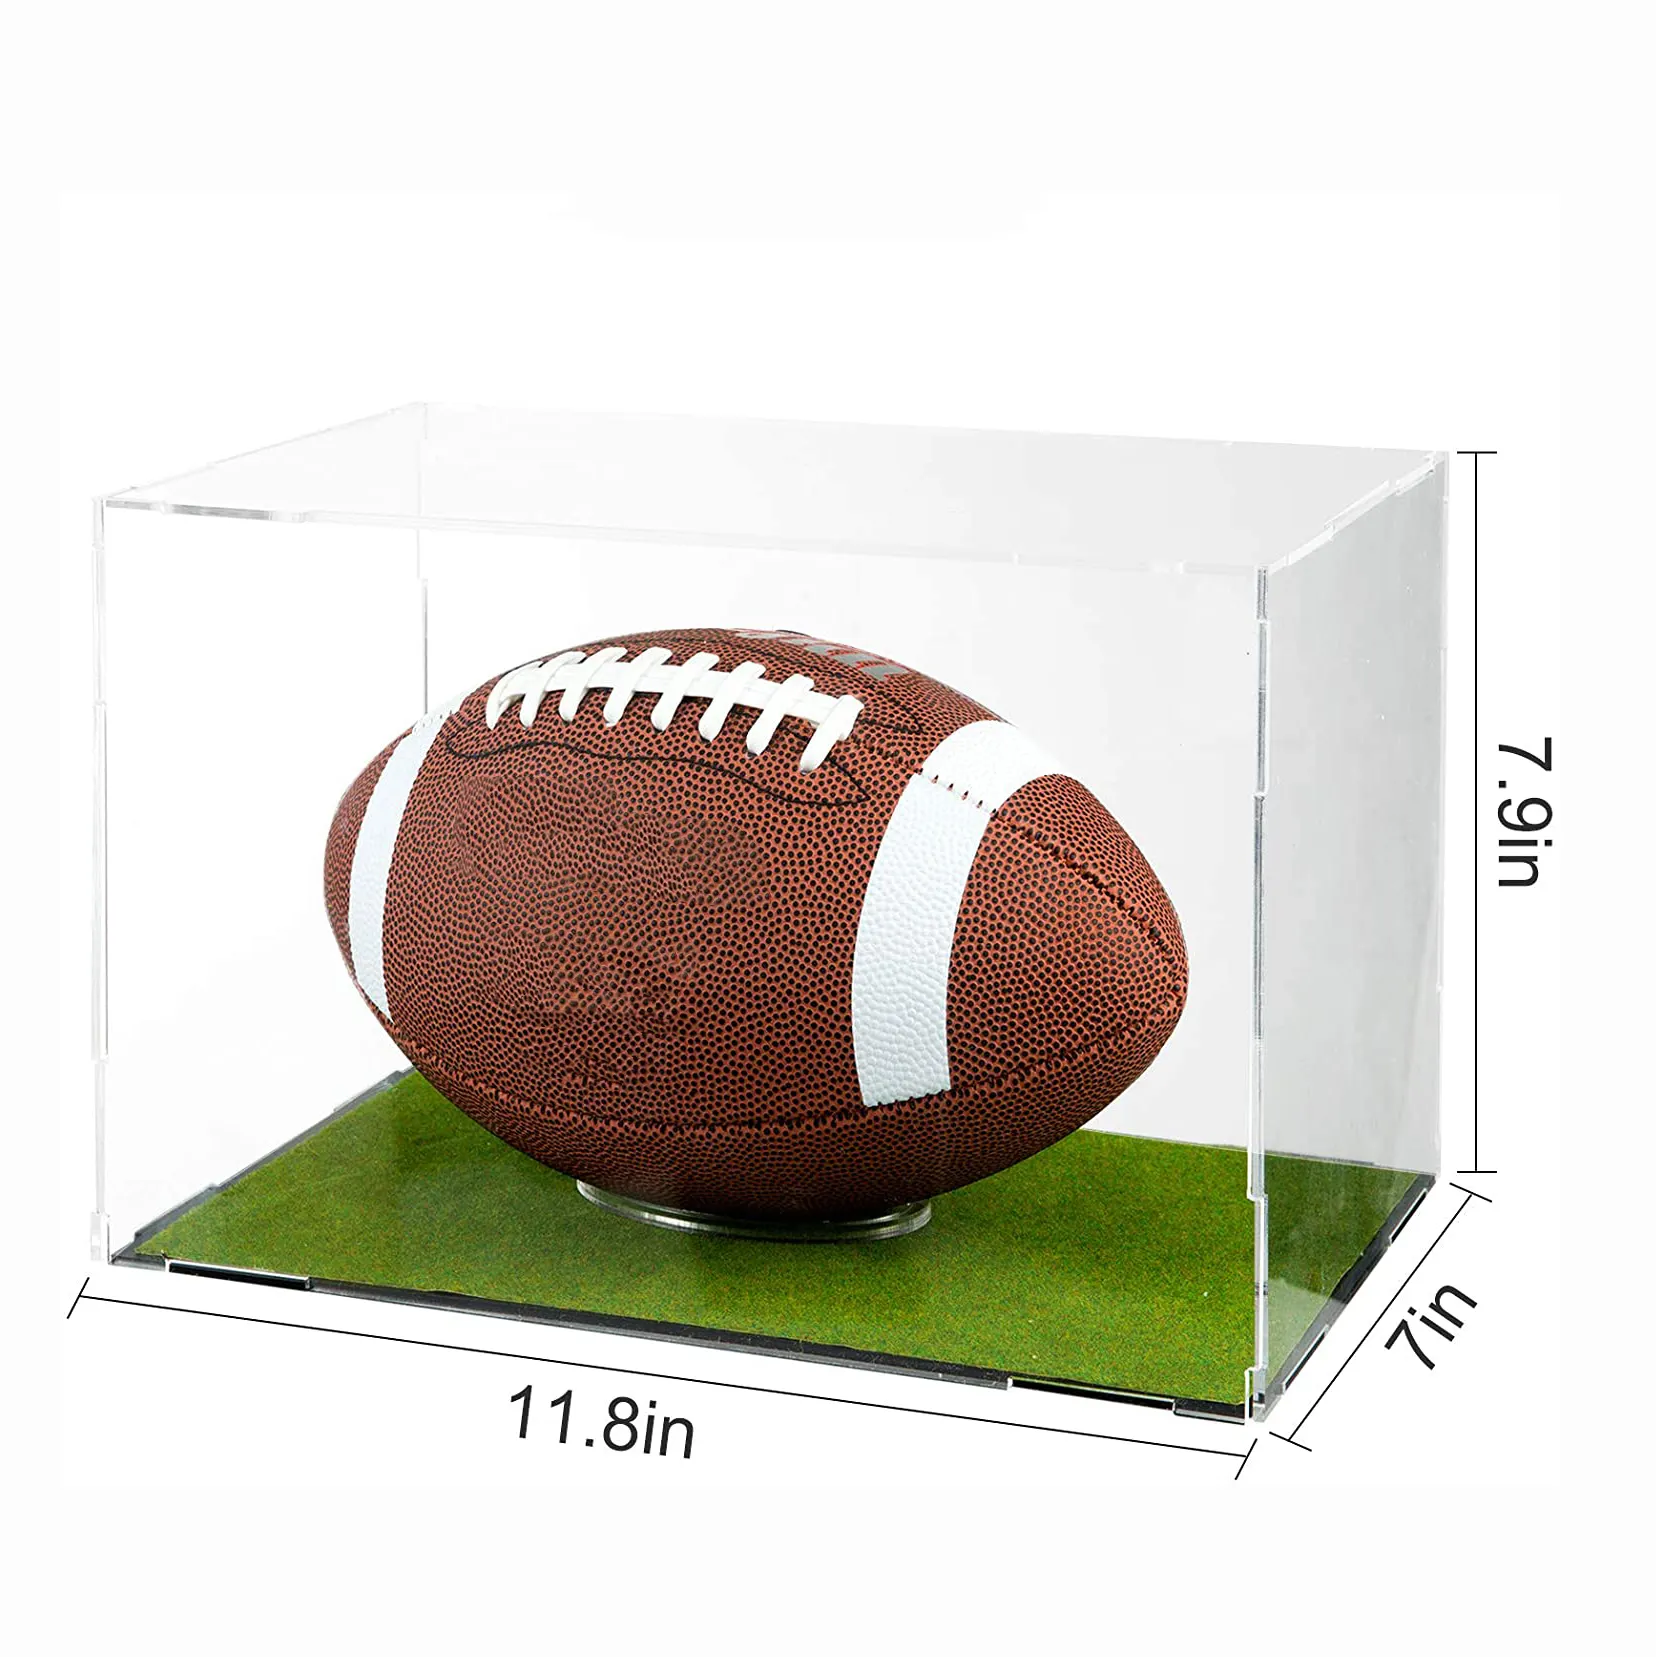 ดีลักซ์อเนกประสงค์ยูวีคริลิคผลิตภัณฑ์กีฬาแสดงกล่อง Risers ยืนฟุตบอลกรณีการแสดงผลที่มีฐานไม้